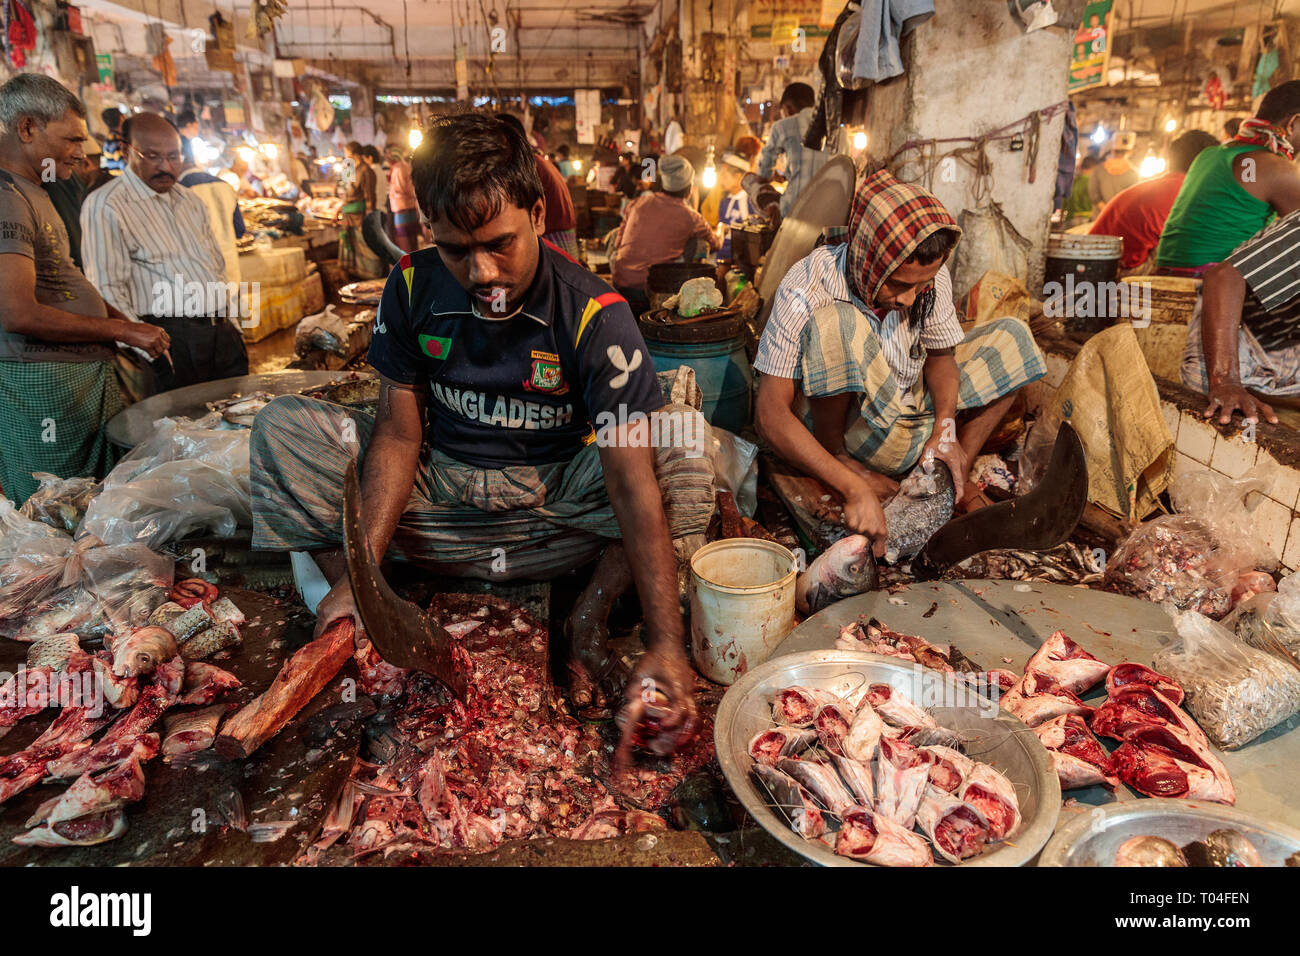 Colorido Mercado de carne con proveedores comerciales y personas que transportan mercancías en las calles de Dhaka, Bangladesh Foto de stock